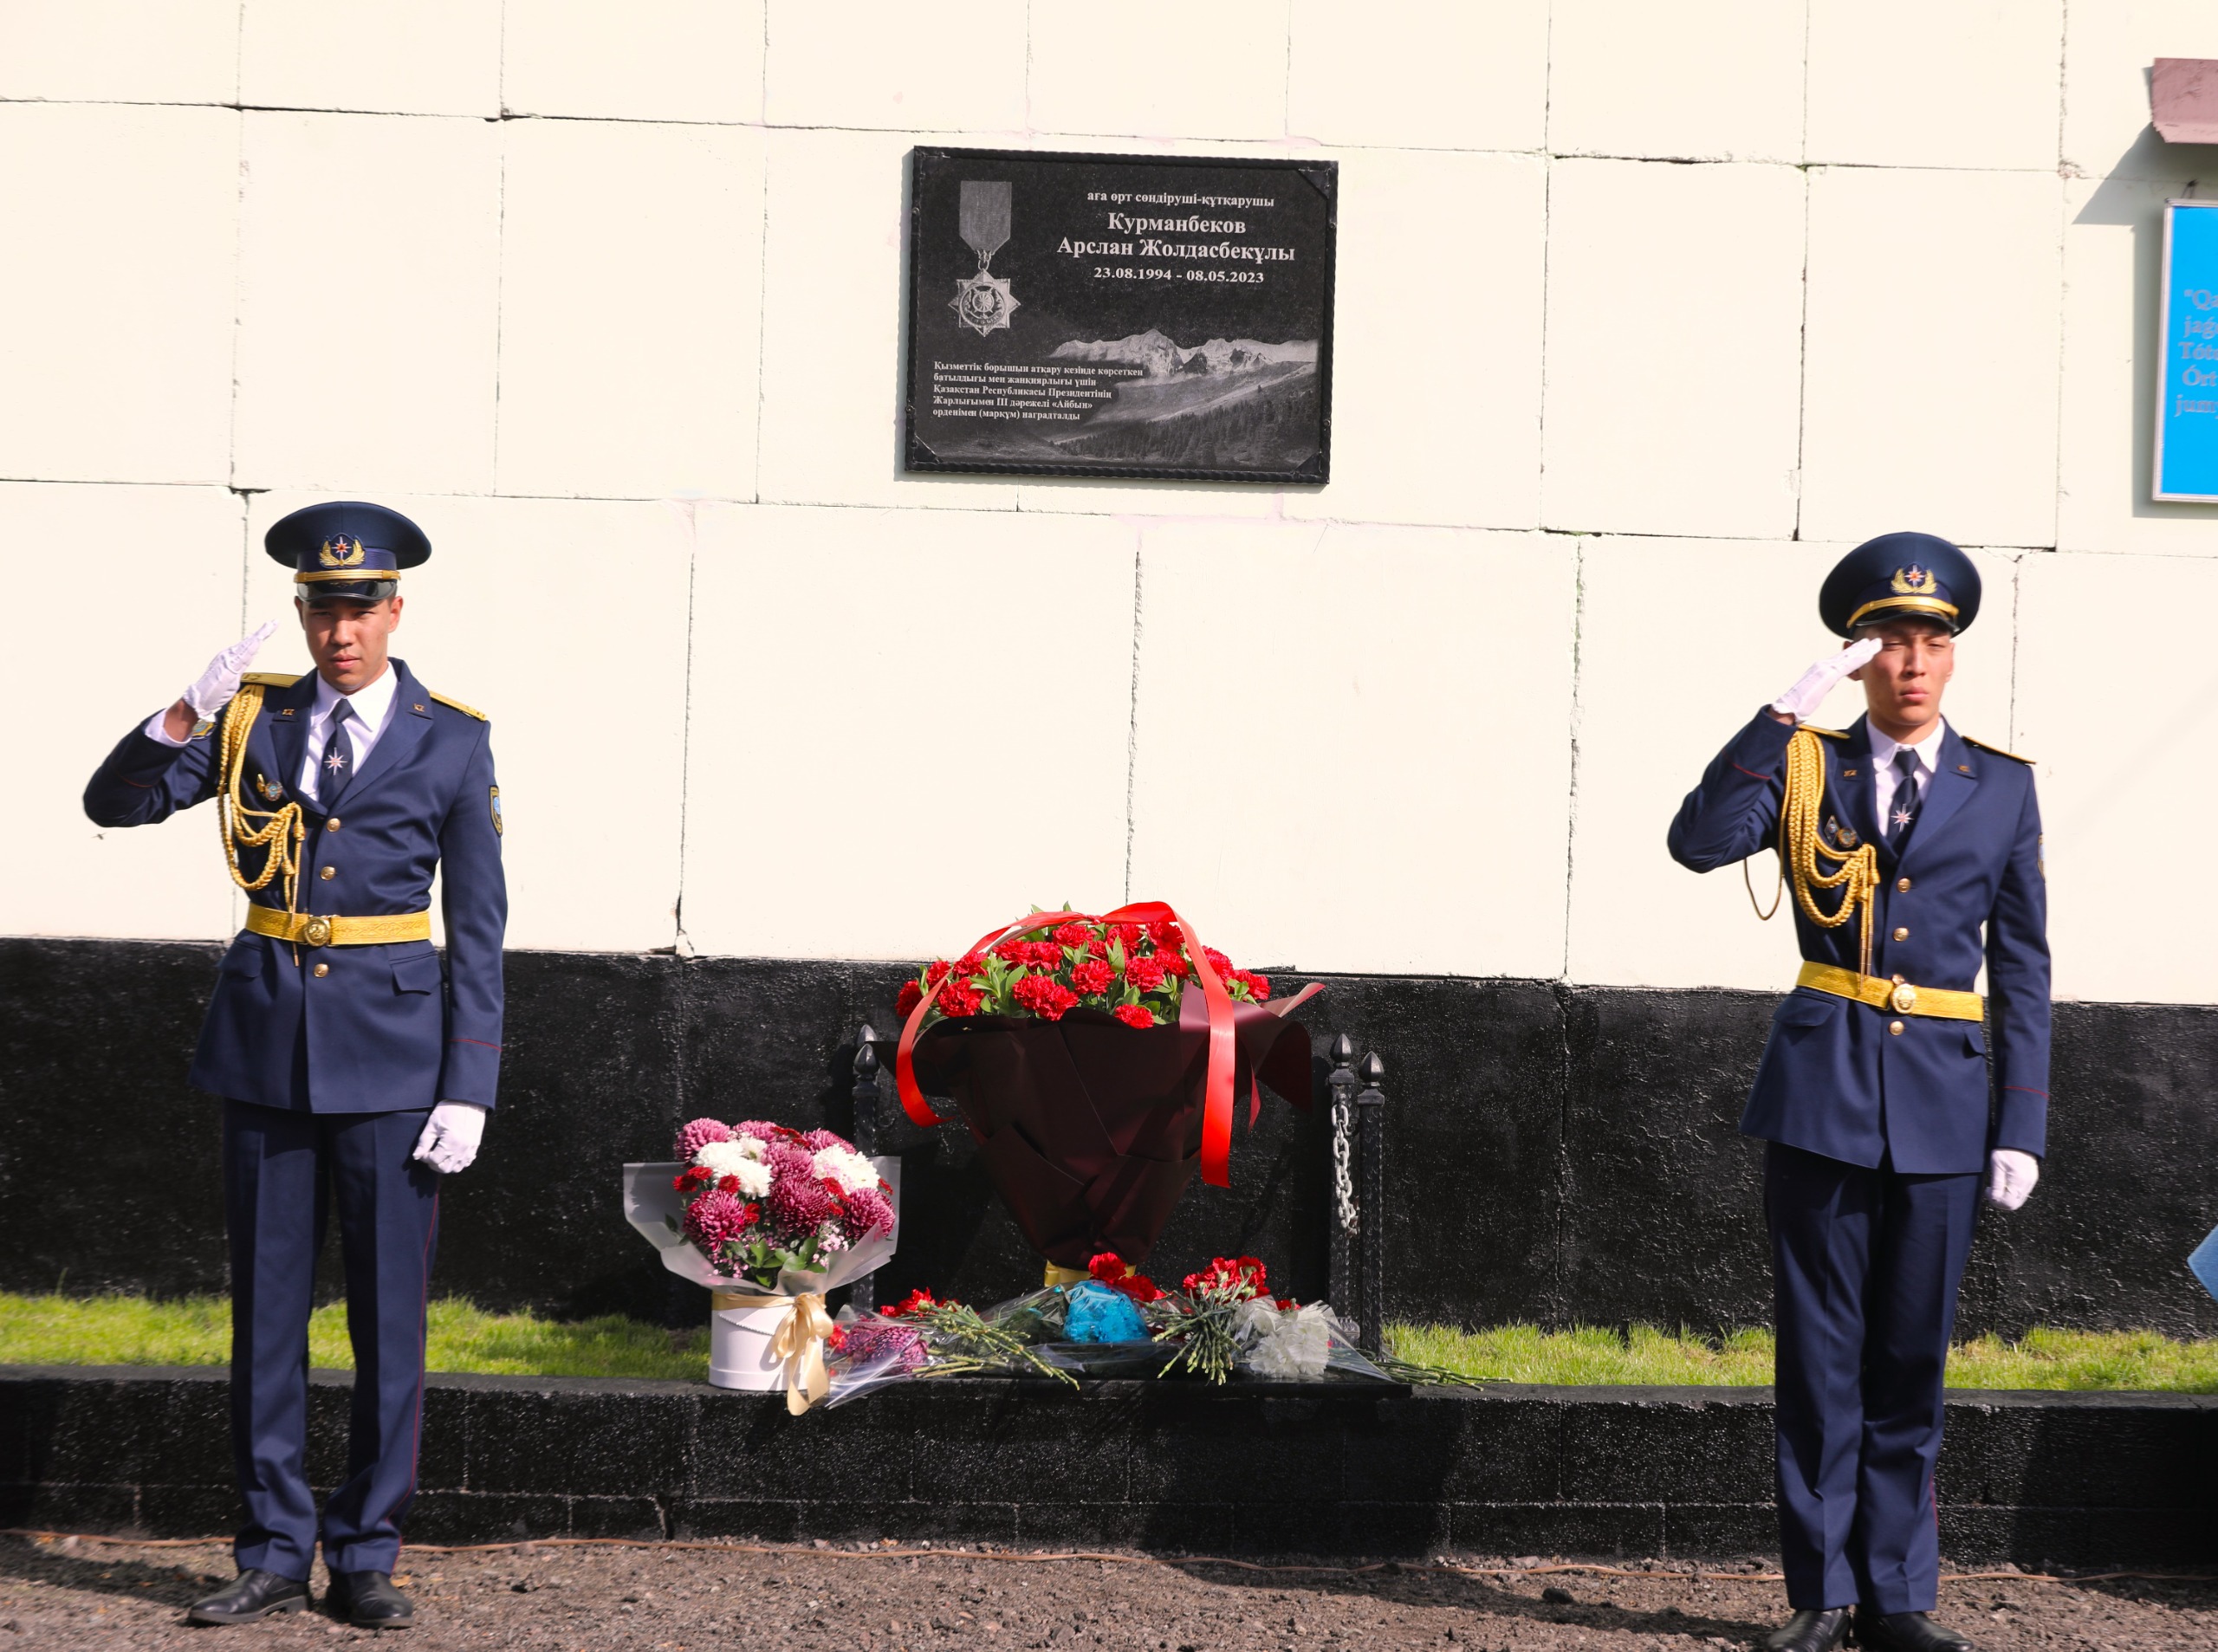 Мемориальную доску установили погибшему пожарному из Алматы  Арслану Курманбекову